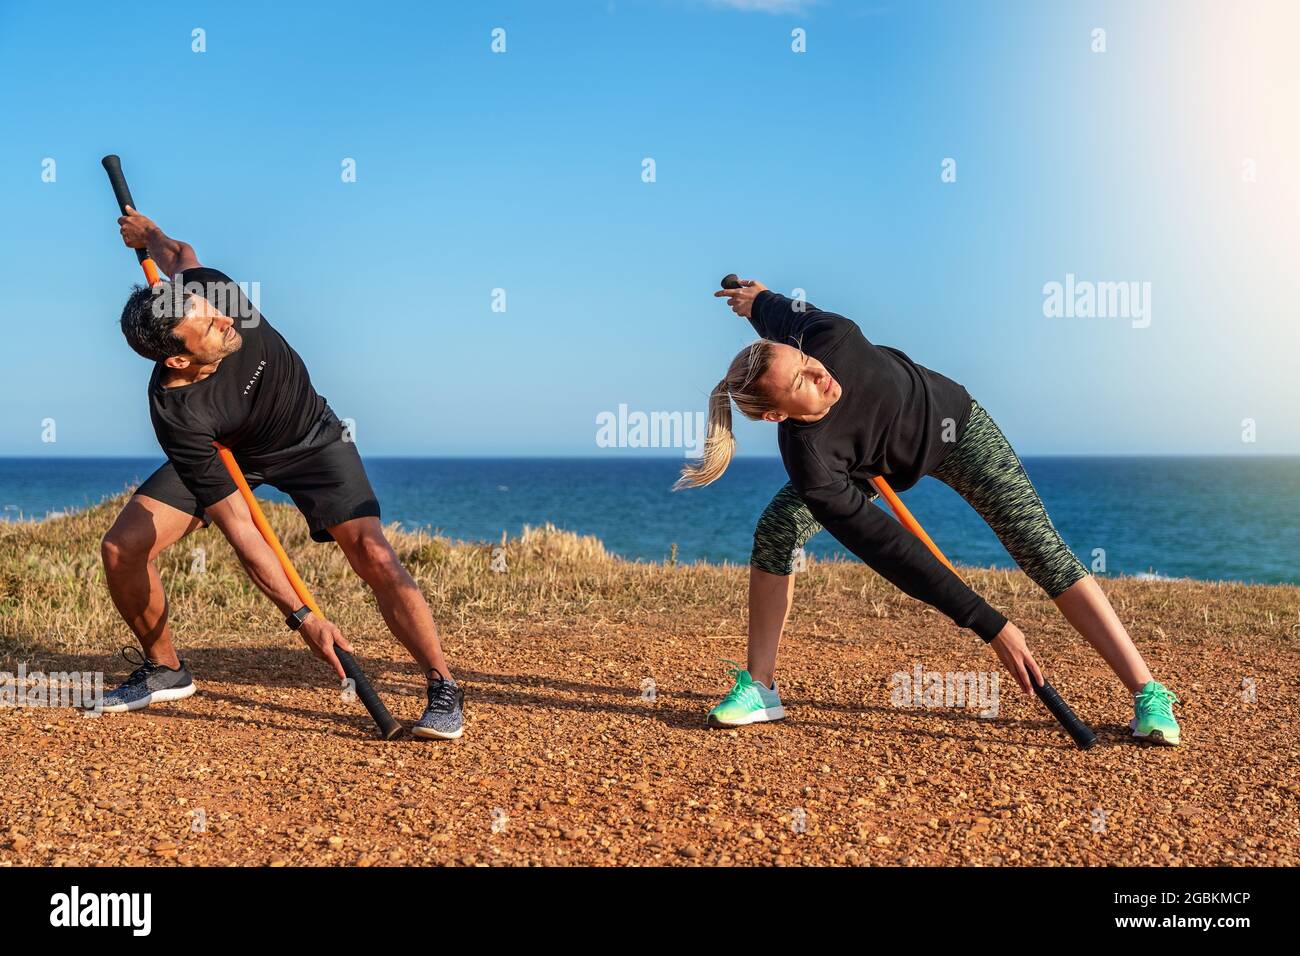 Un uomo e una donna di mezza età sull'oceano stanno facendo un riscaldamento. Lezioni di fitness. Utilizzo di bastoncini da ginnastica per l'allungamento. Giorno di sole. Foto Stock